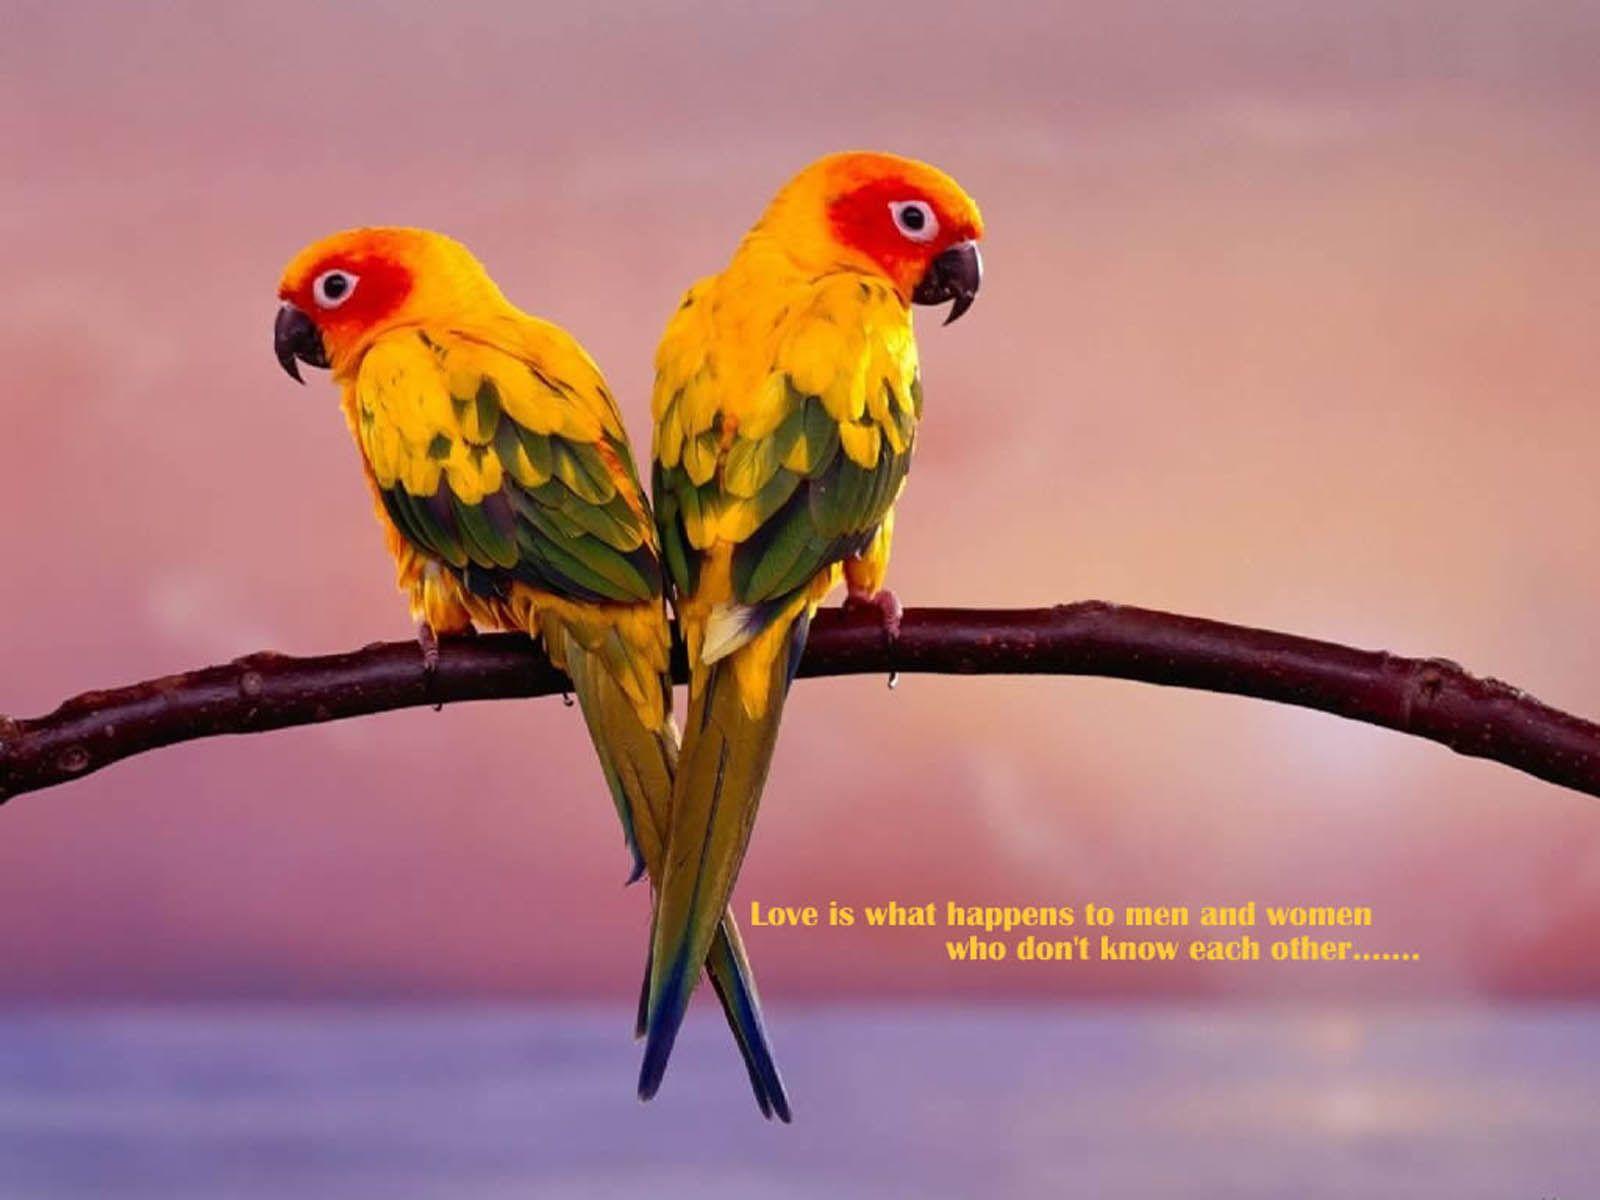 1600x1200 Tải xuống miễn phí Tag Love Birds Wallpaper Hình ảnh và Hình ảnh [1600x1200] cho Máy tính để bàn, Di động & Máy tính bảng của bạn.  Khám phá Hình nền những chú chim tình yêu.  Hình nền miễn phí Chim, Tình yêu miễn phí